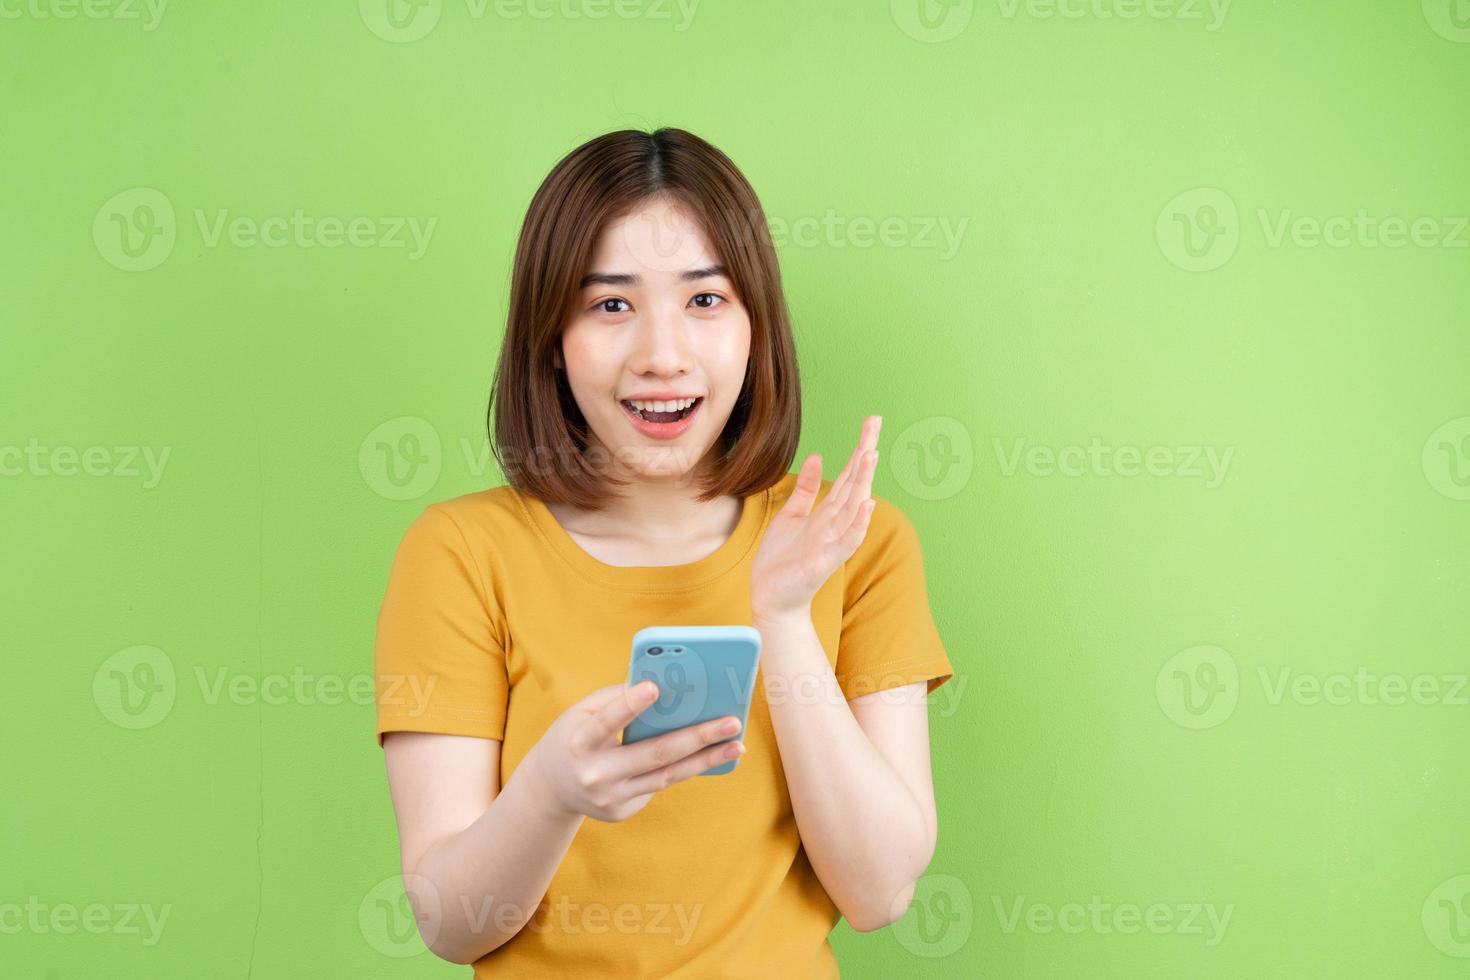 giovane ragazza asiatica in posa su sfondo verde foto